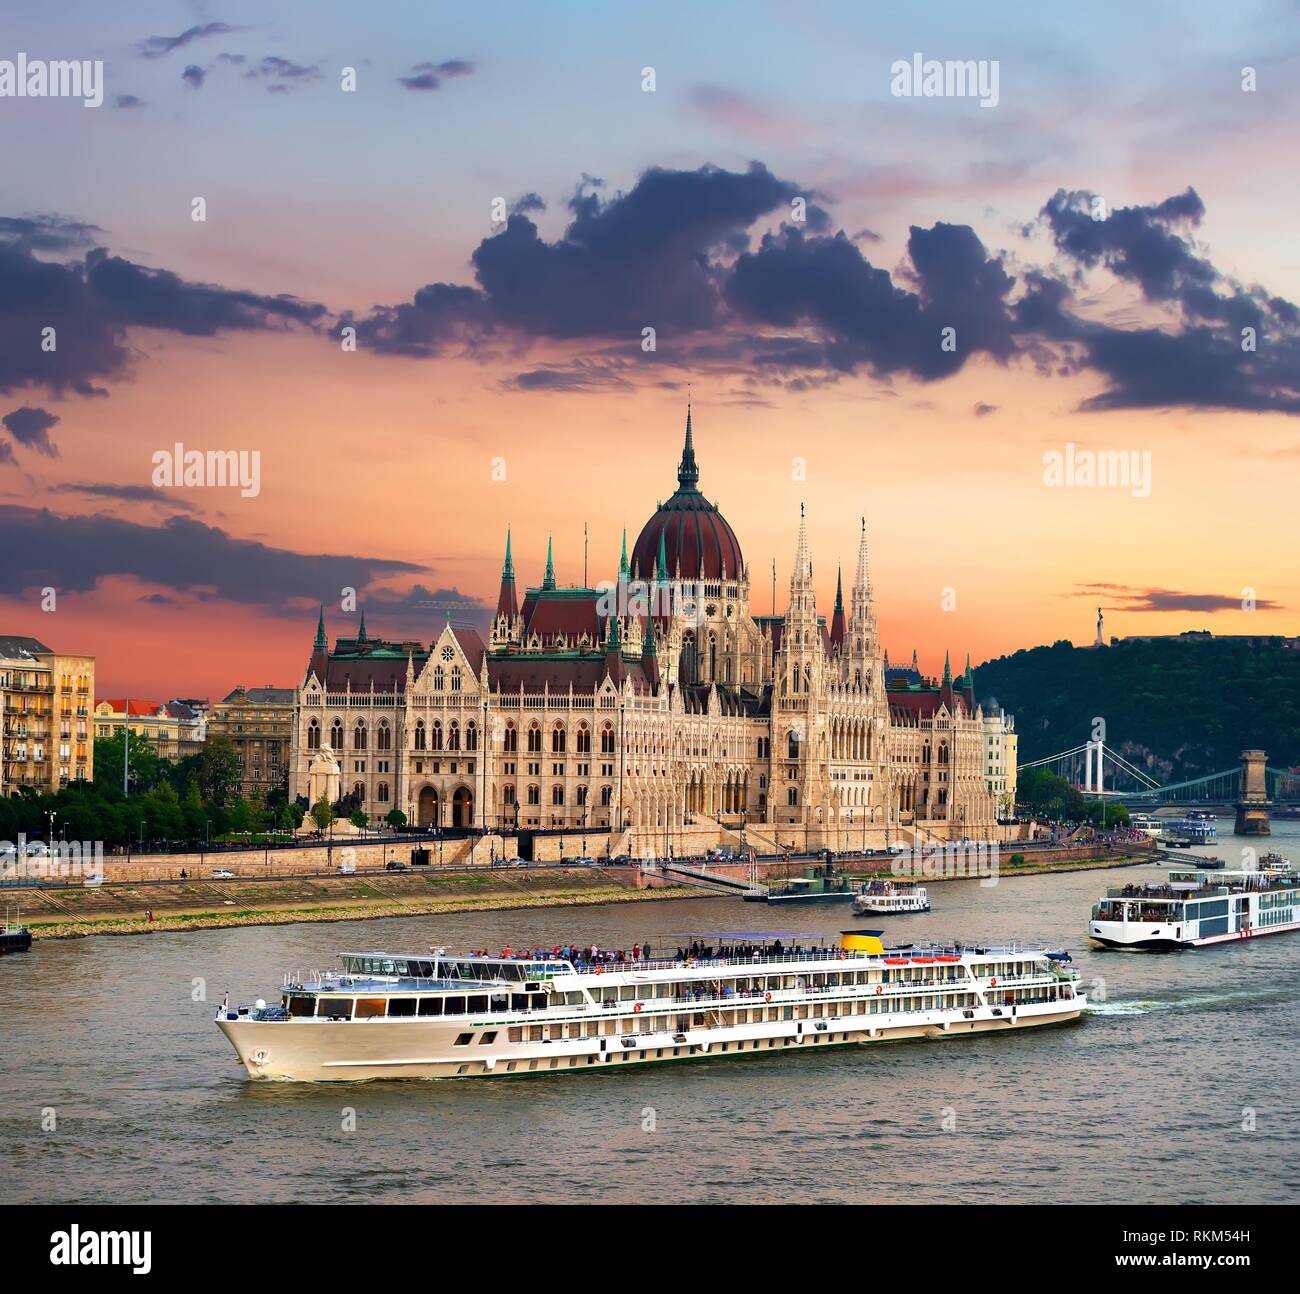 Los barcos turísticos y el Parlamento húngaro al atardecer, Budapest. Foto de stock